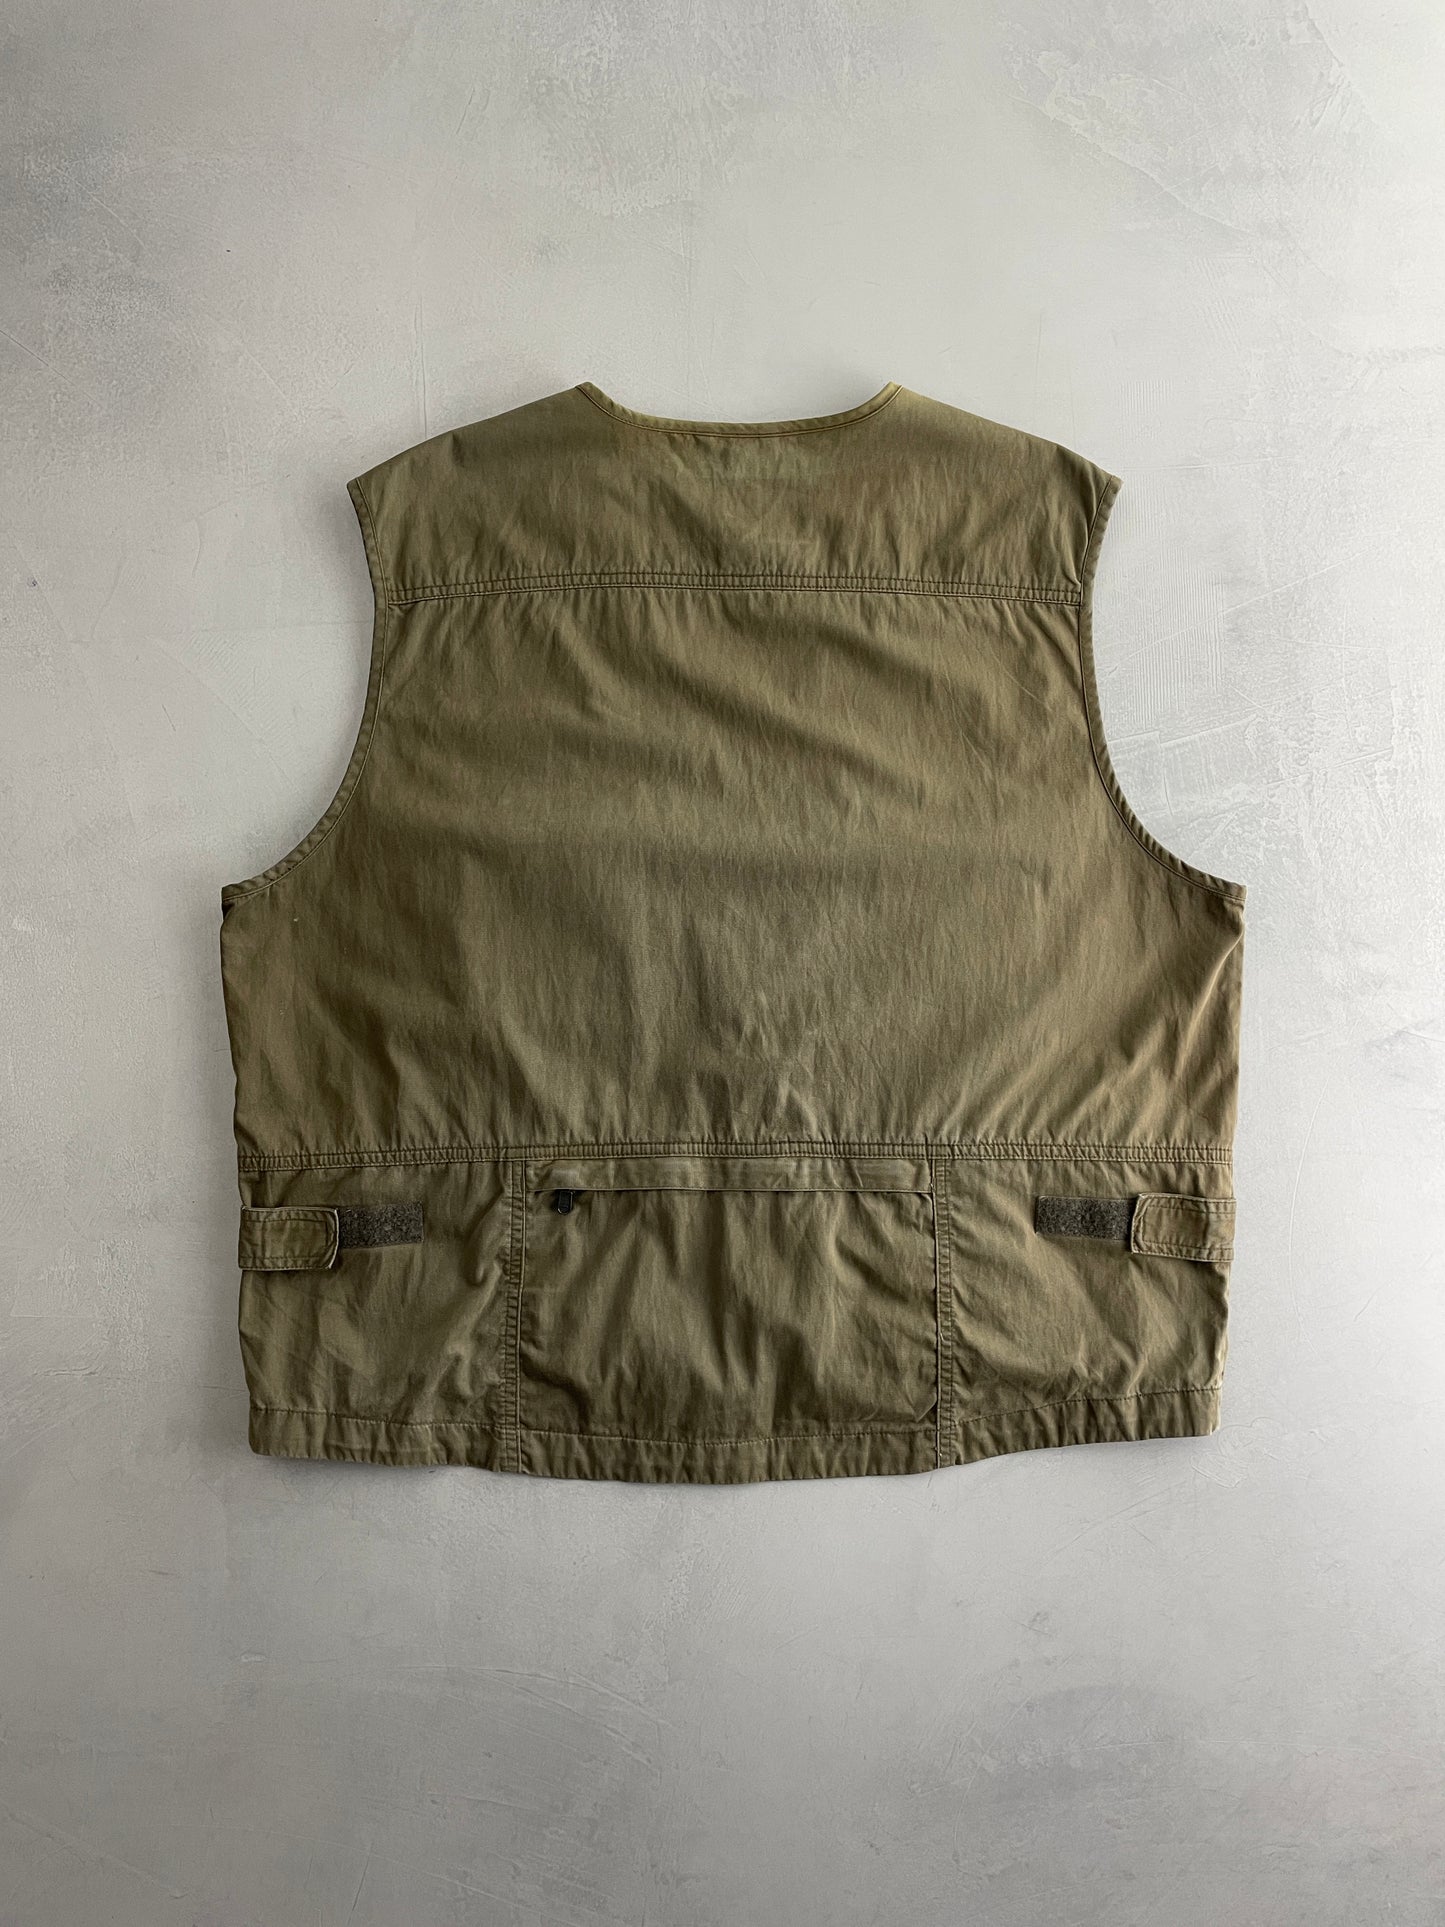 Eddie Bauer Utility Vest [XL]